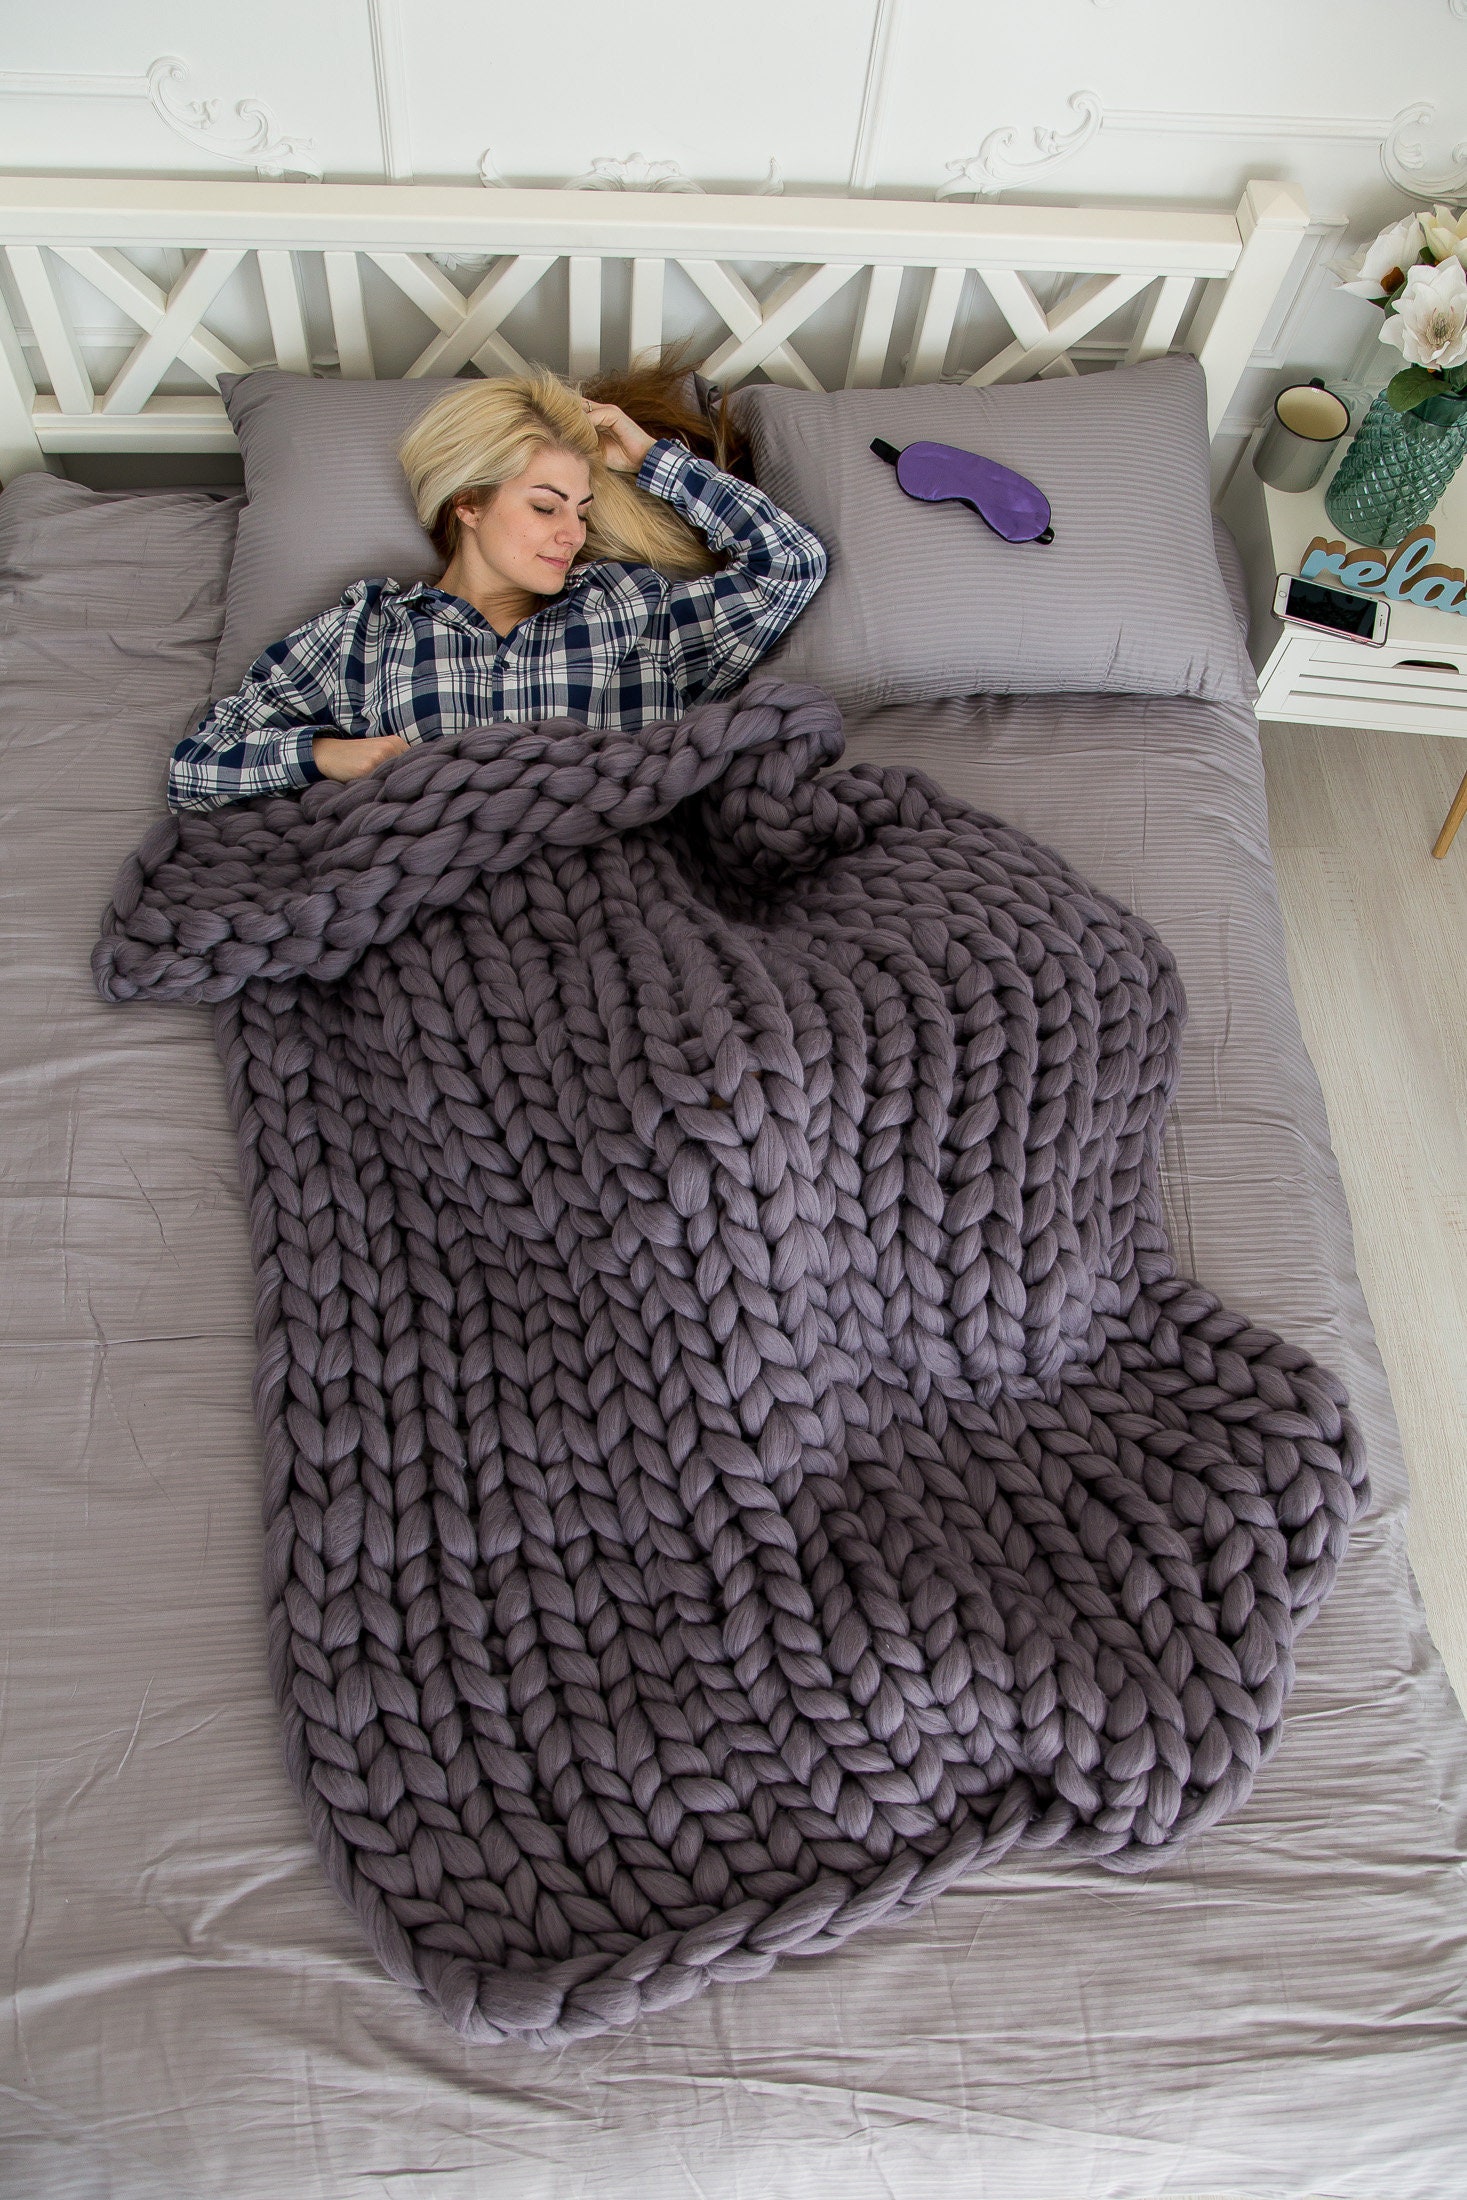  YZJJ Manta de punto grueso de lana tejida a mano suave manta  para sofá cama para mascotas, mantas de lana merina suave y acogedora  poliéster, nudo trenzado grueso (color gris, tamaño